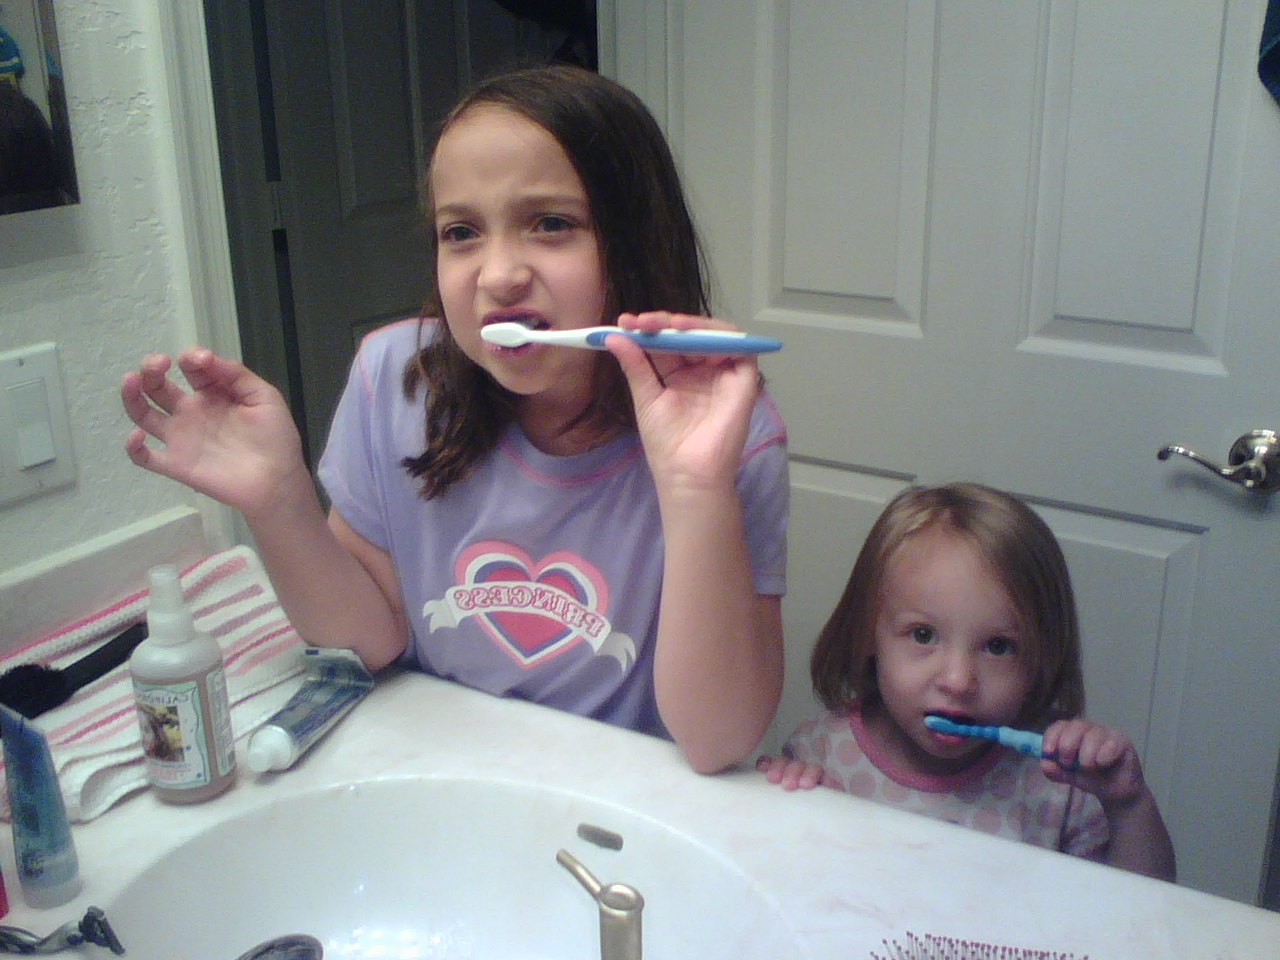 [Sarah+&+Ella+brush+teeth.jpg]